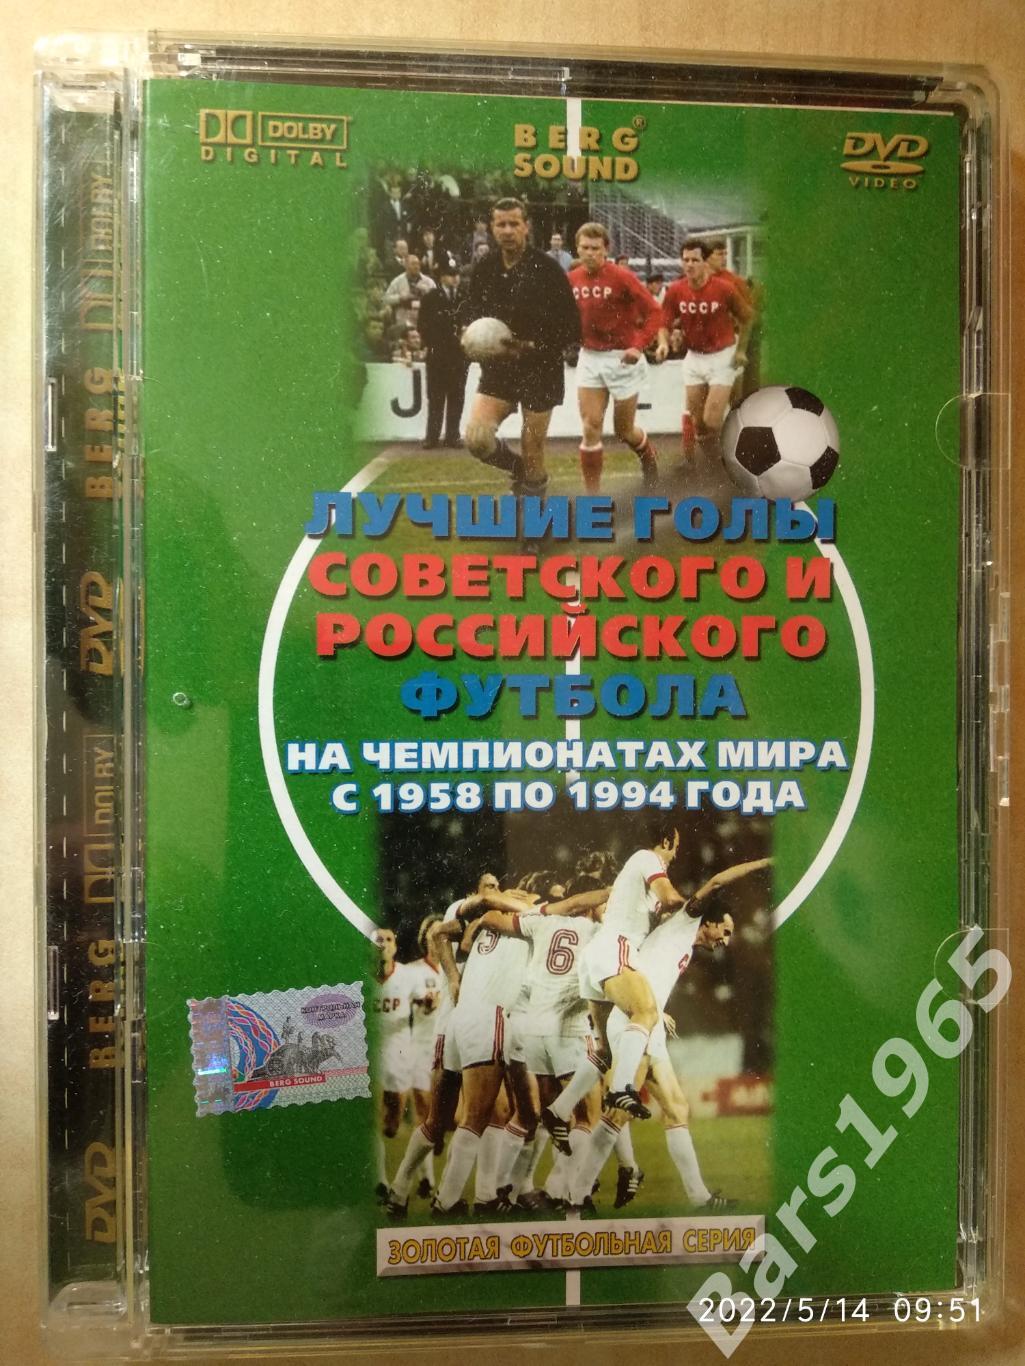 Лучшие голы советского и российского футбола на чемпионатах мира 1958-1994 DVD